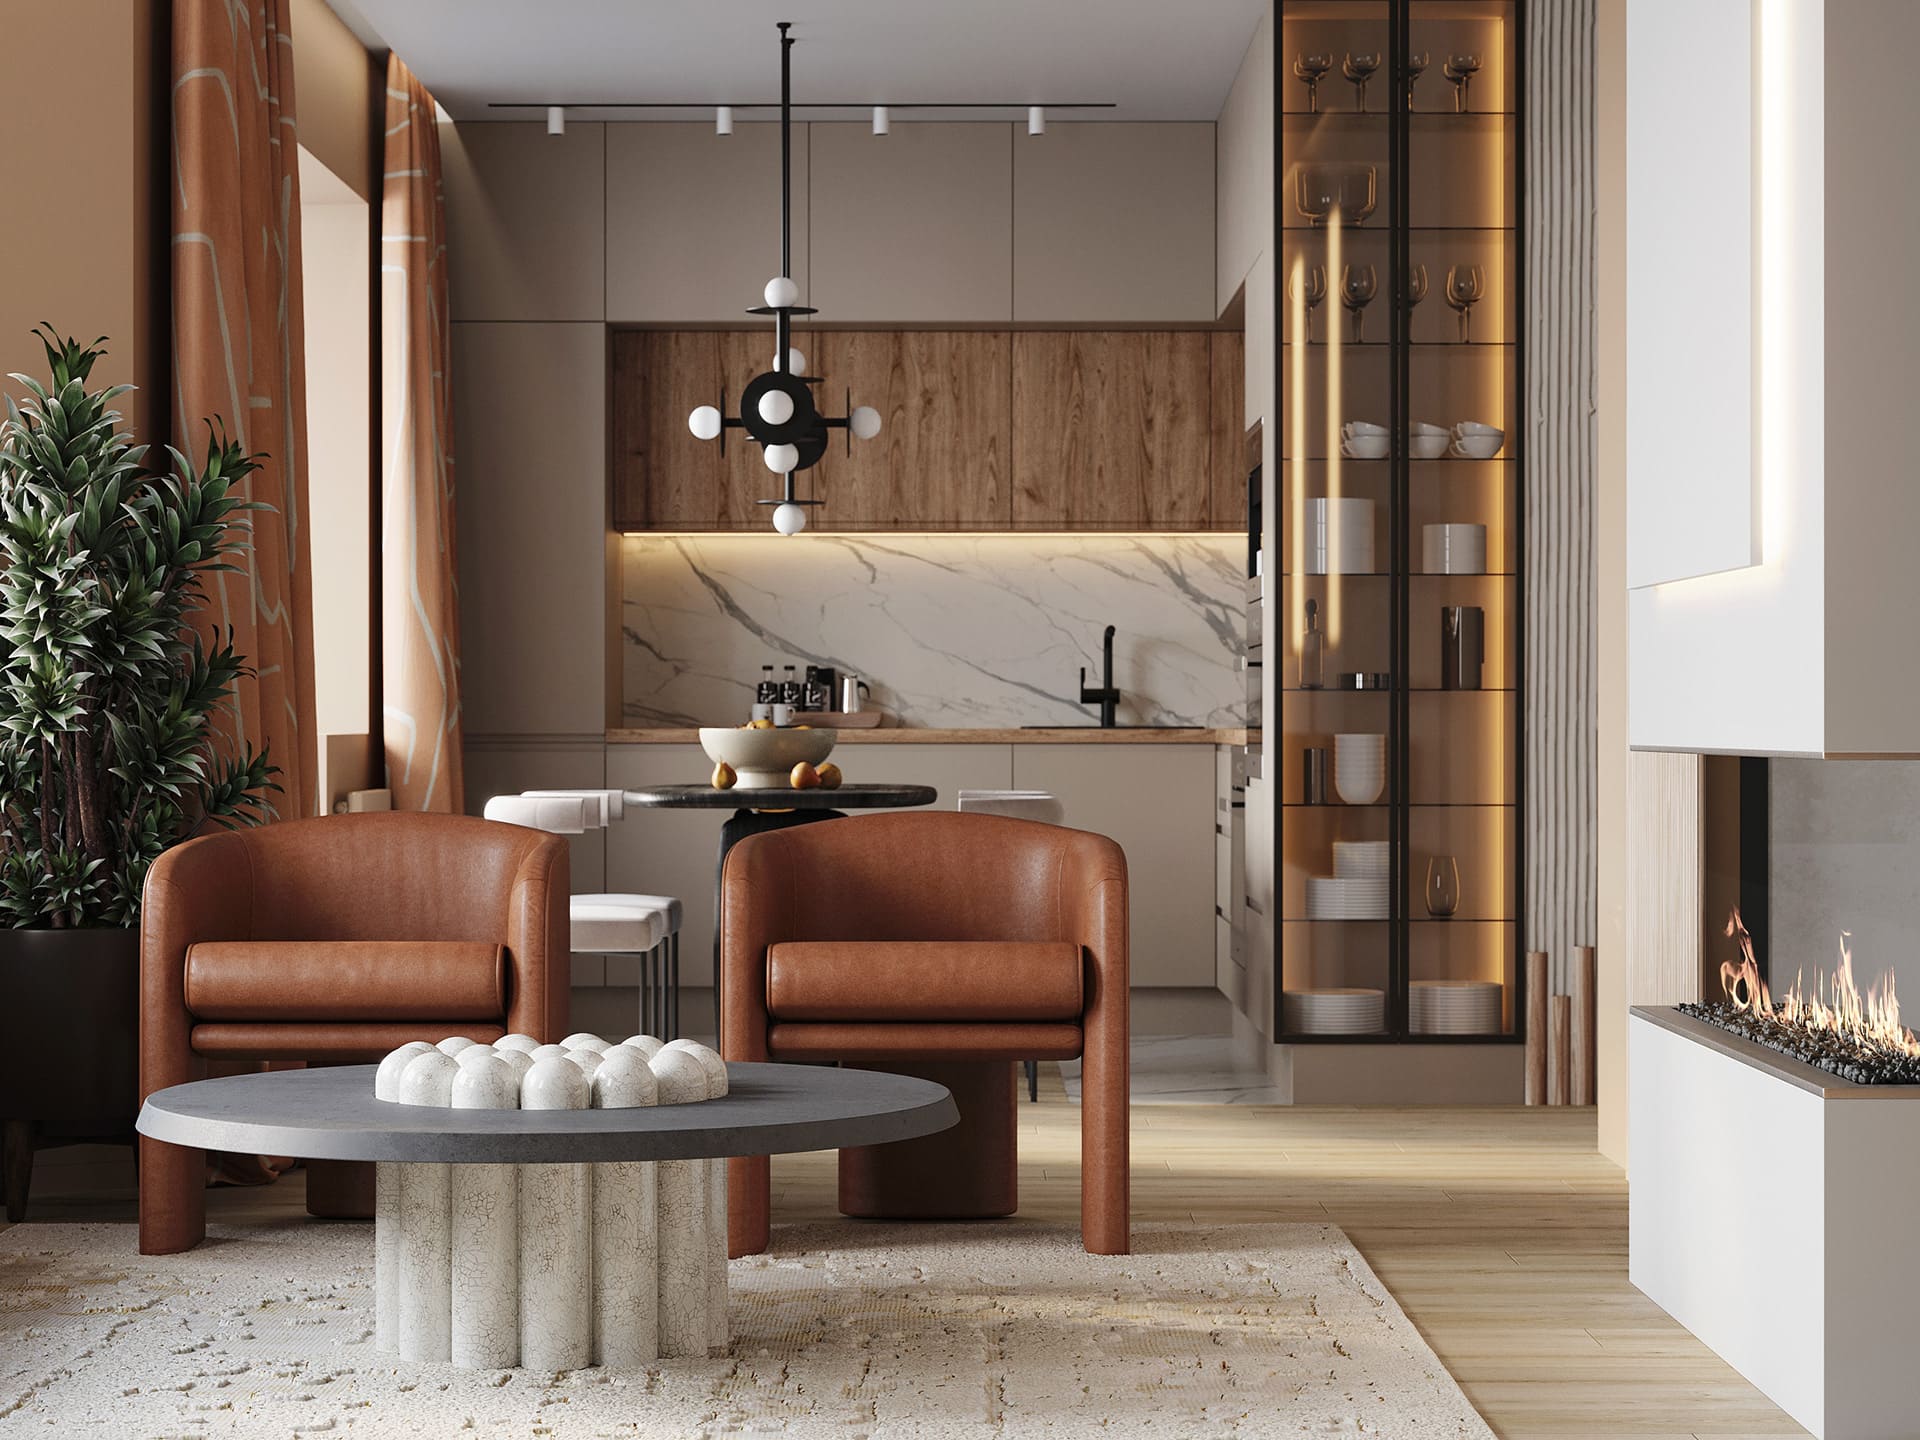 Оформление спальни в современном стиле – модные тренды в дизайне красивых интерьеров (фото)